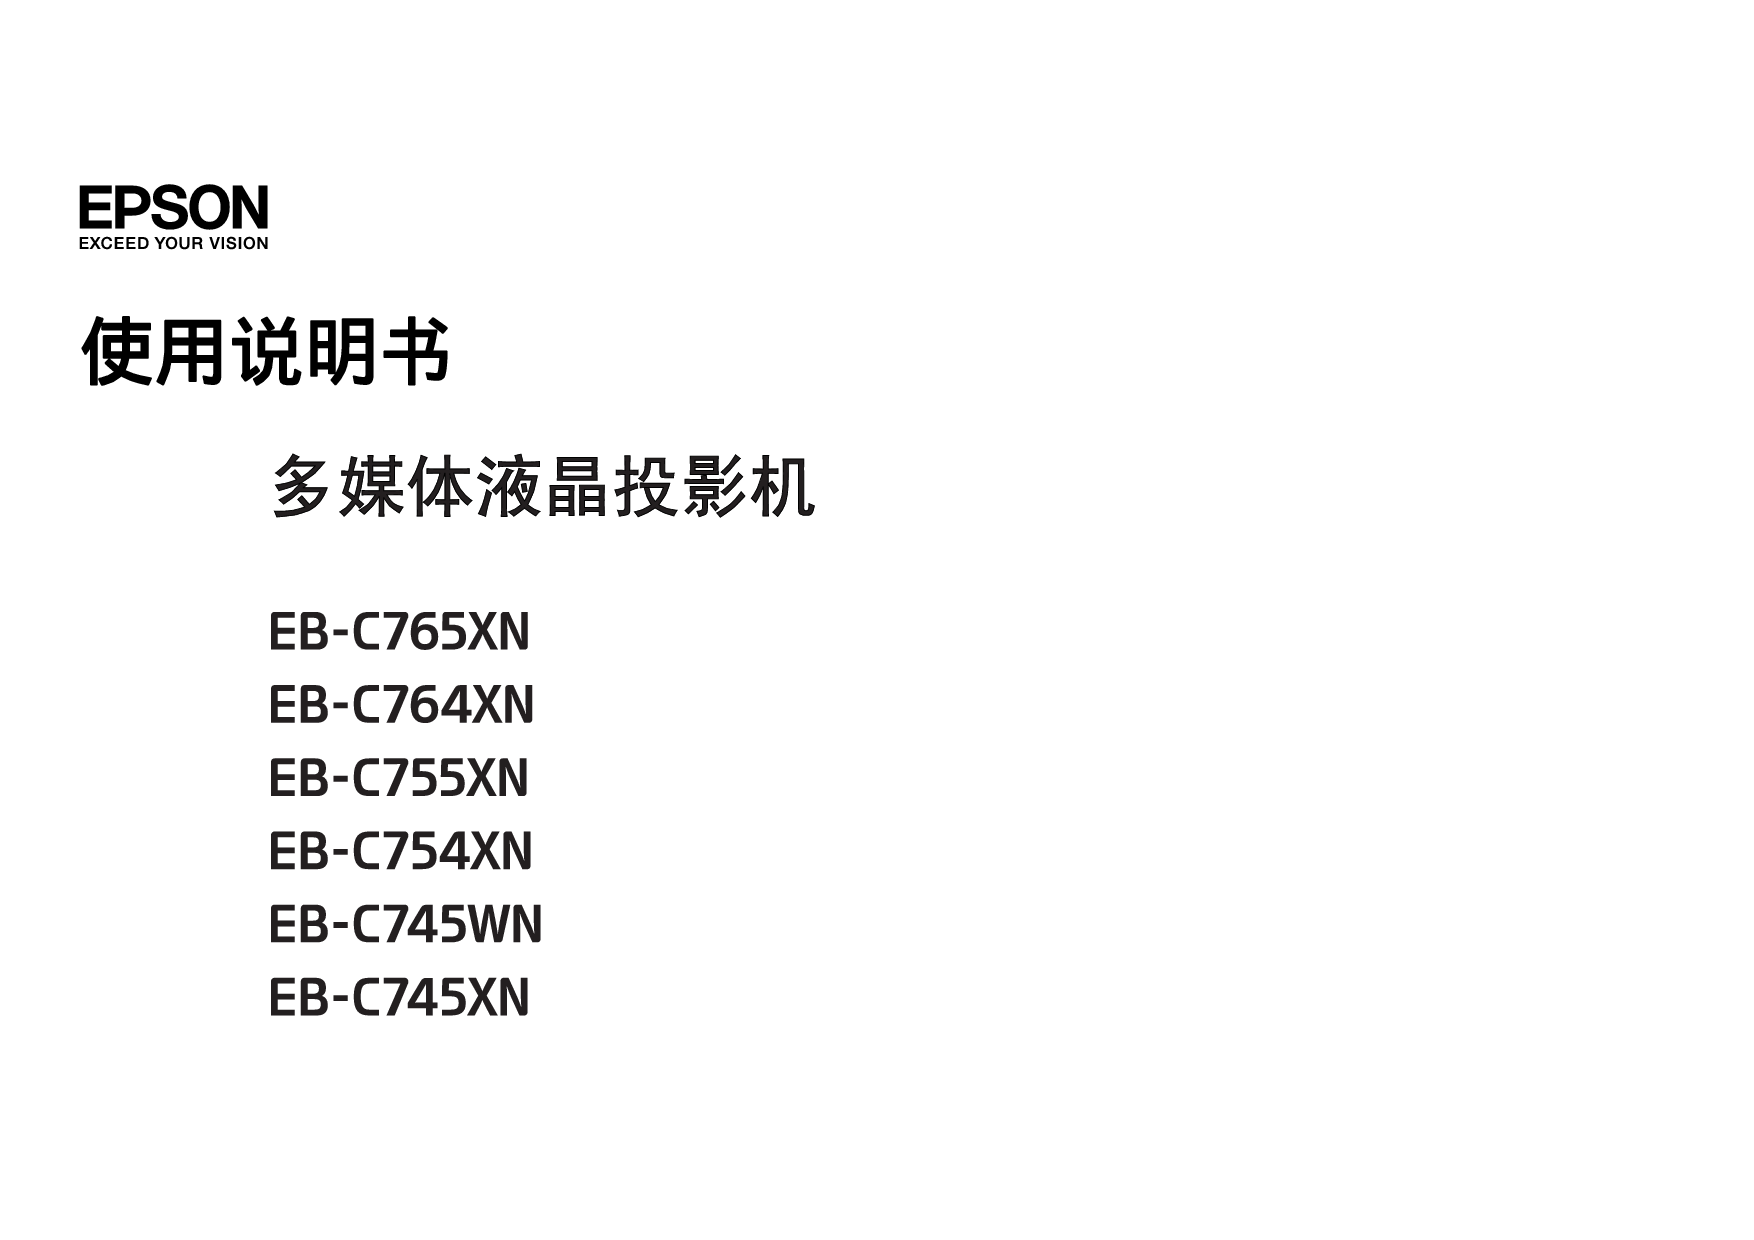 爱普生 Epson EB-C745WN 使用说明书 封面